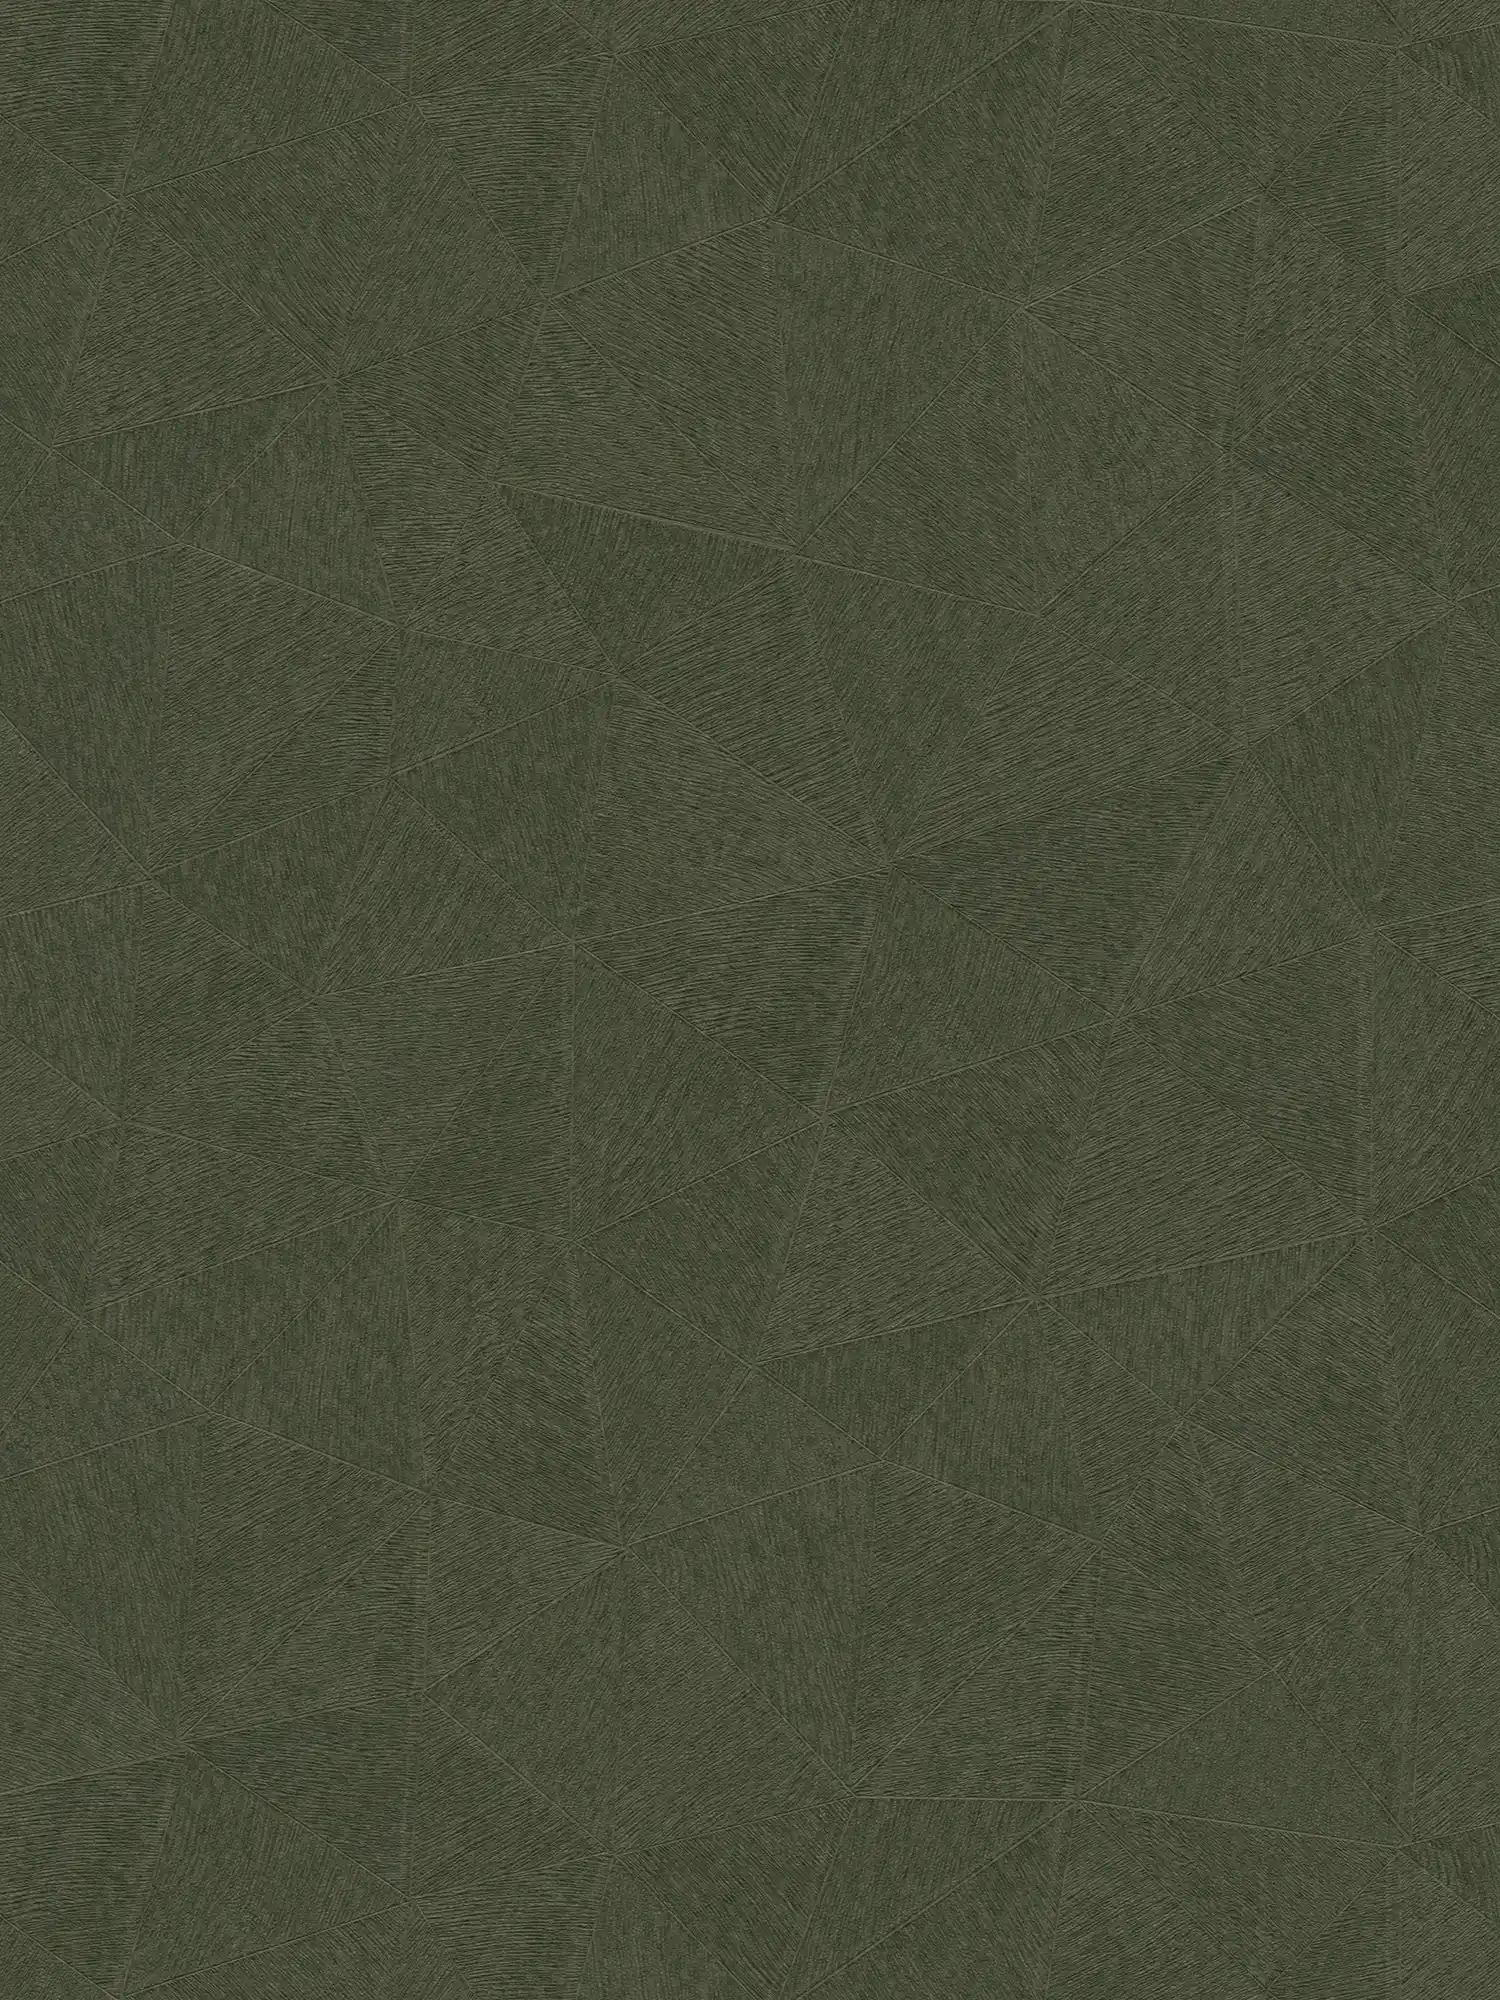 Vliesbehang met subtiel grafisch patroon - groen
